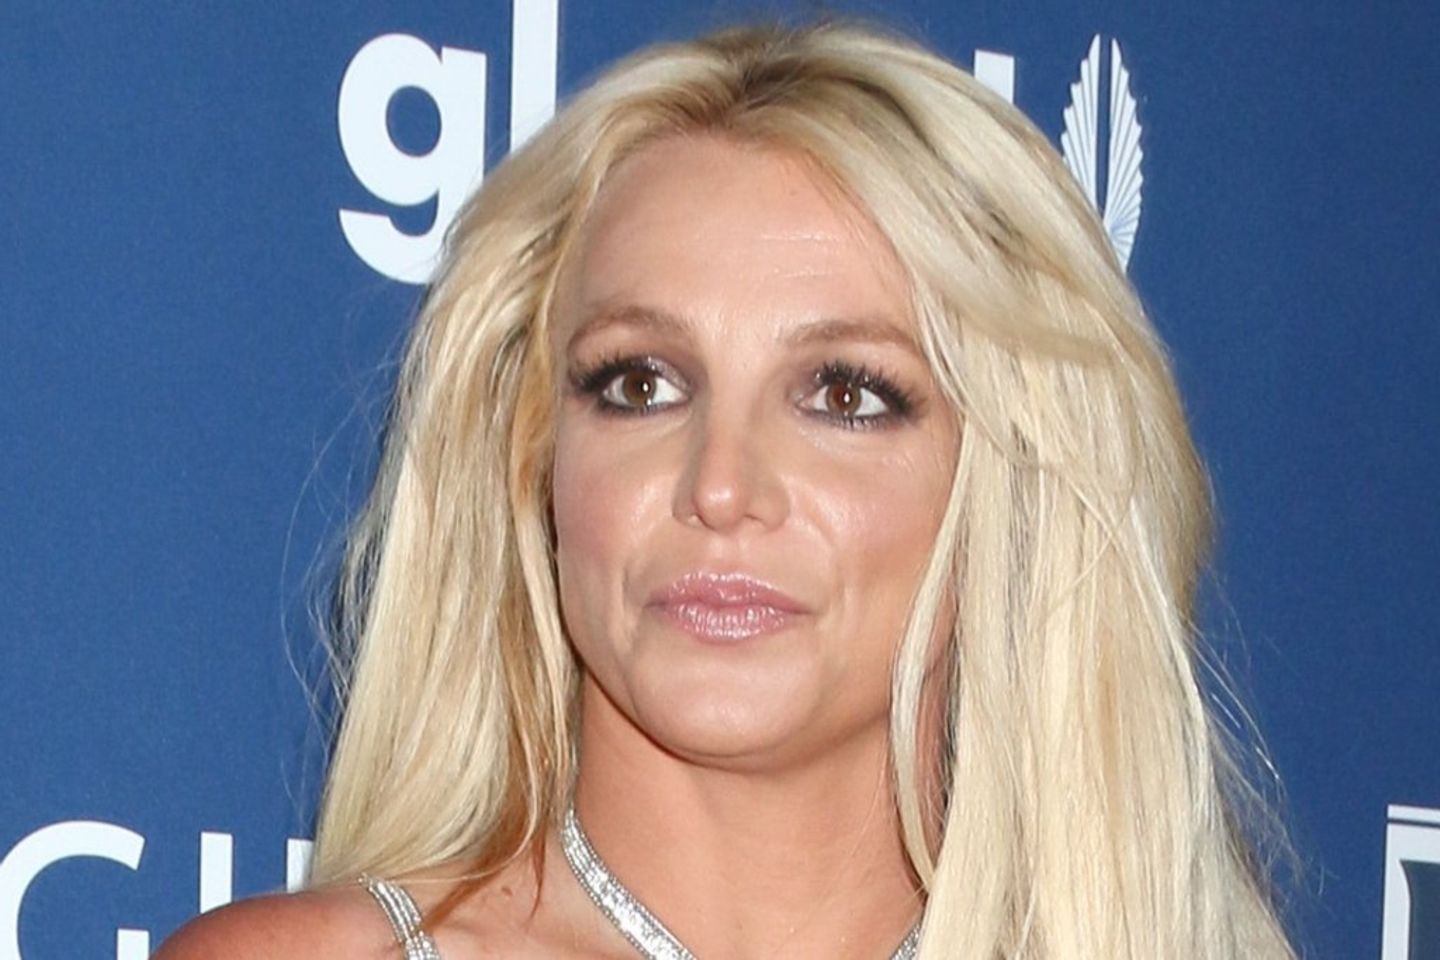 Sängerin Britney Spears meldet sich mit verwirrenden Aussagen persönlich zu Wort.